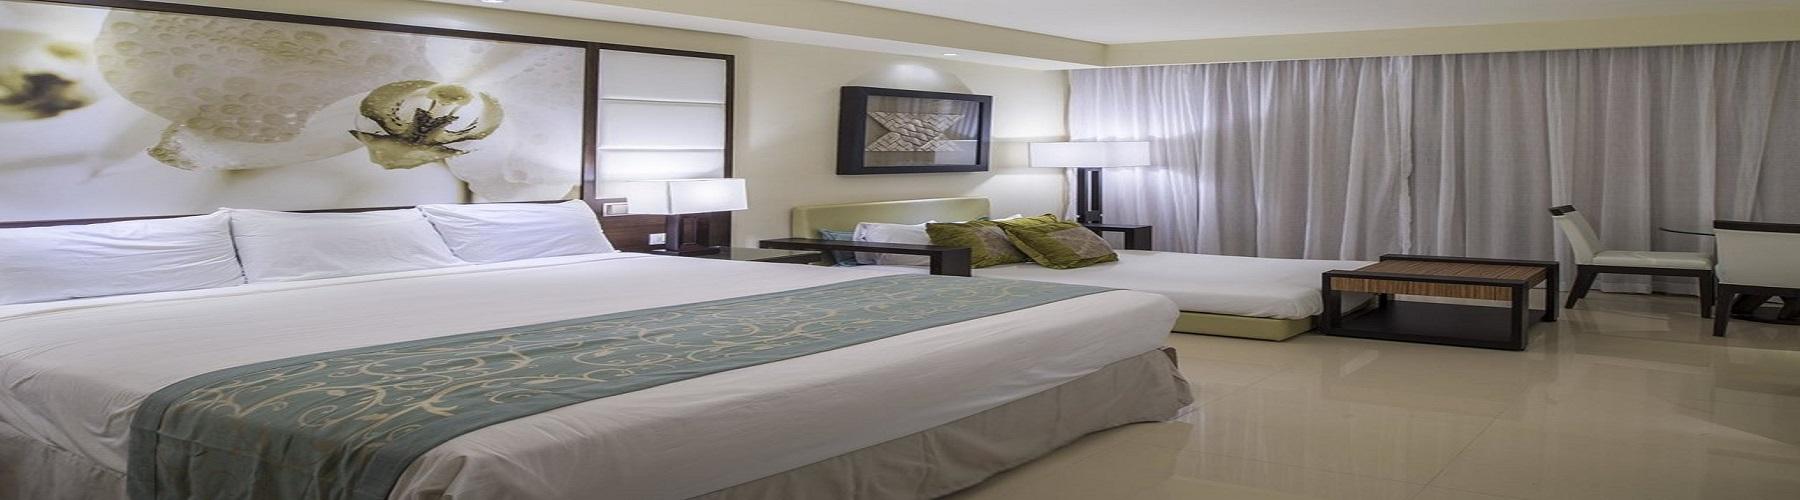 Забронировать номер в отеле Royalton Punta Cana Resort and Casino 